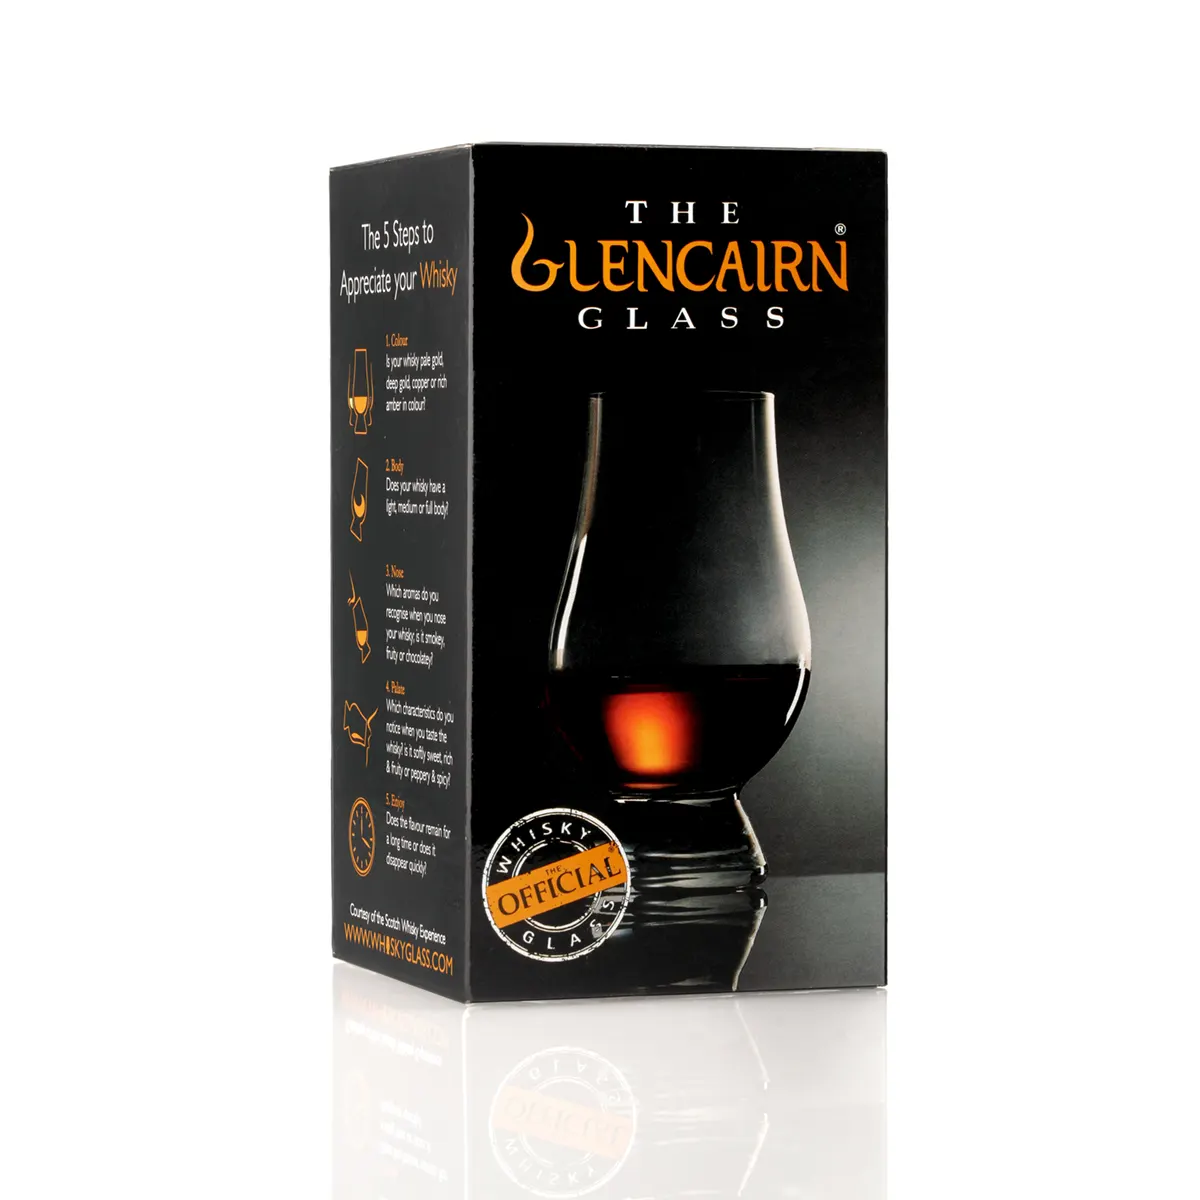 Wee Glencairn Glass - Whisky Tasting Glas aus Schottland